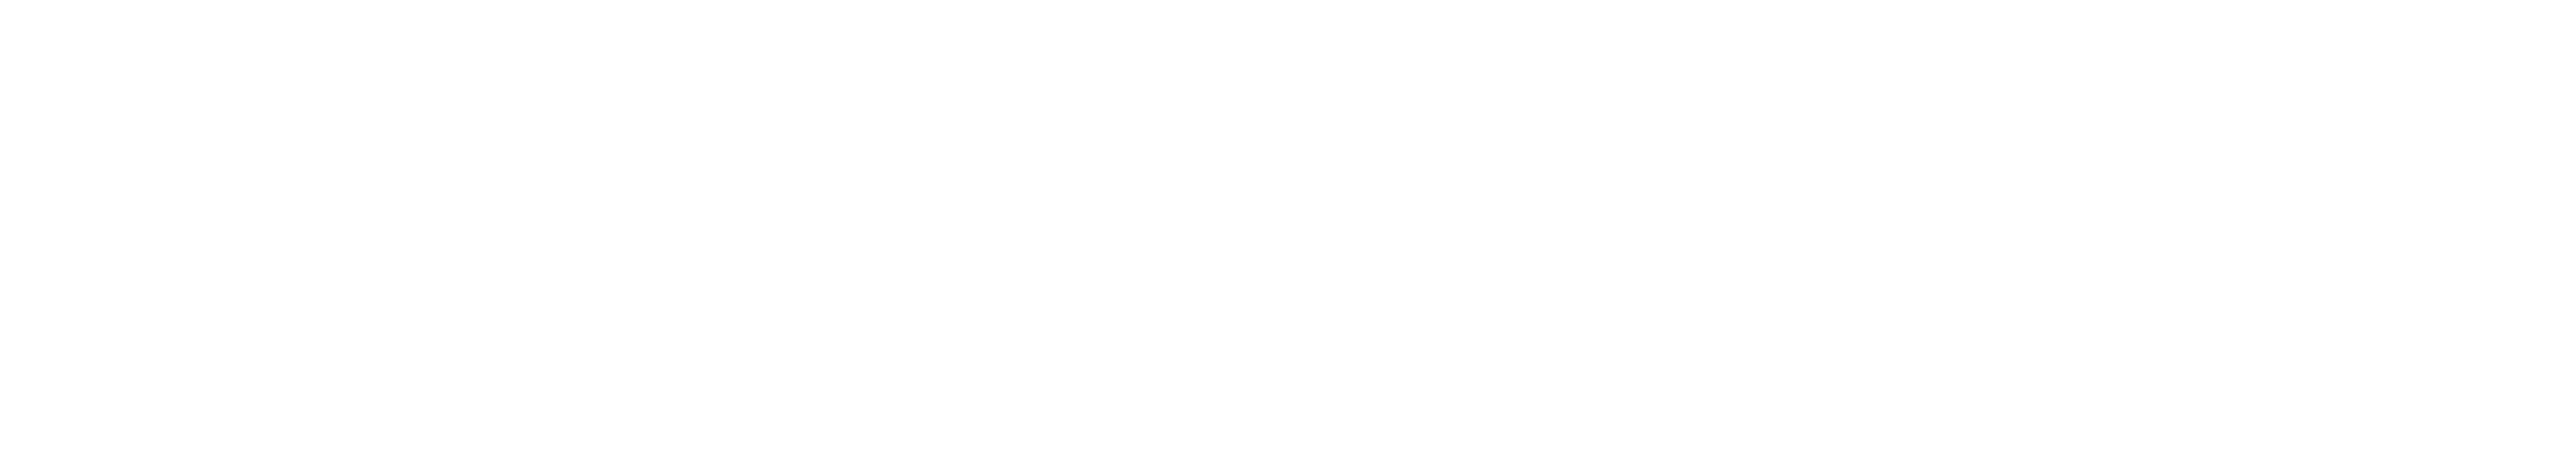 Logotipo_EC-bco